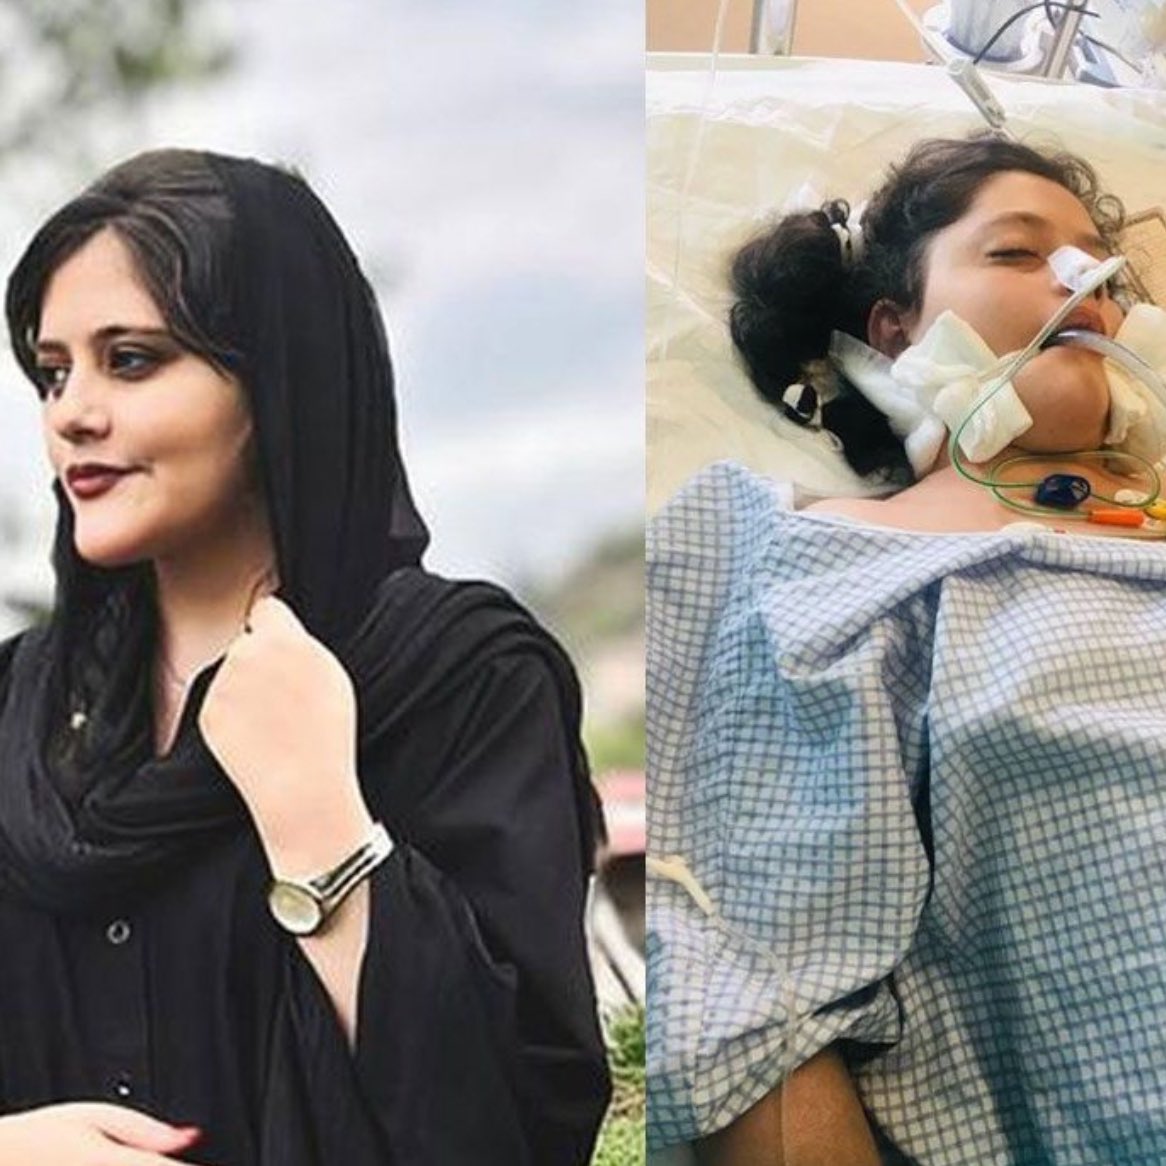 Mahsa Amini, asesinada por la policía de la moral de Irán por no usar el Hiyab. A la mayor parte de “feministas” les importó un ovario. Ahora andan levantando banderas para apoyar a Irán. El odio a los judíos es más fuerte que su perversa moral selectiva.